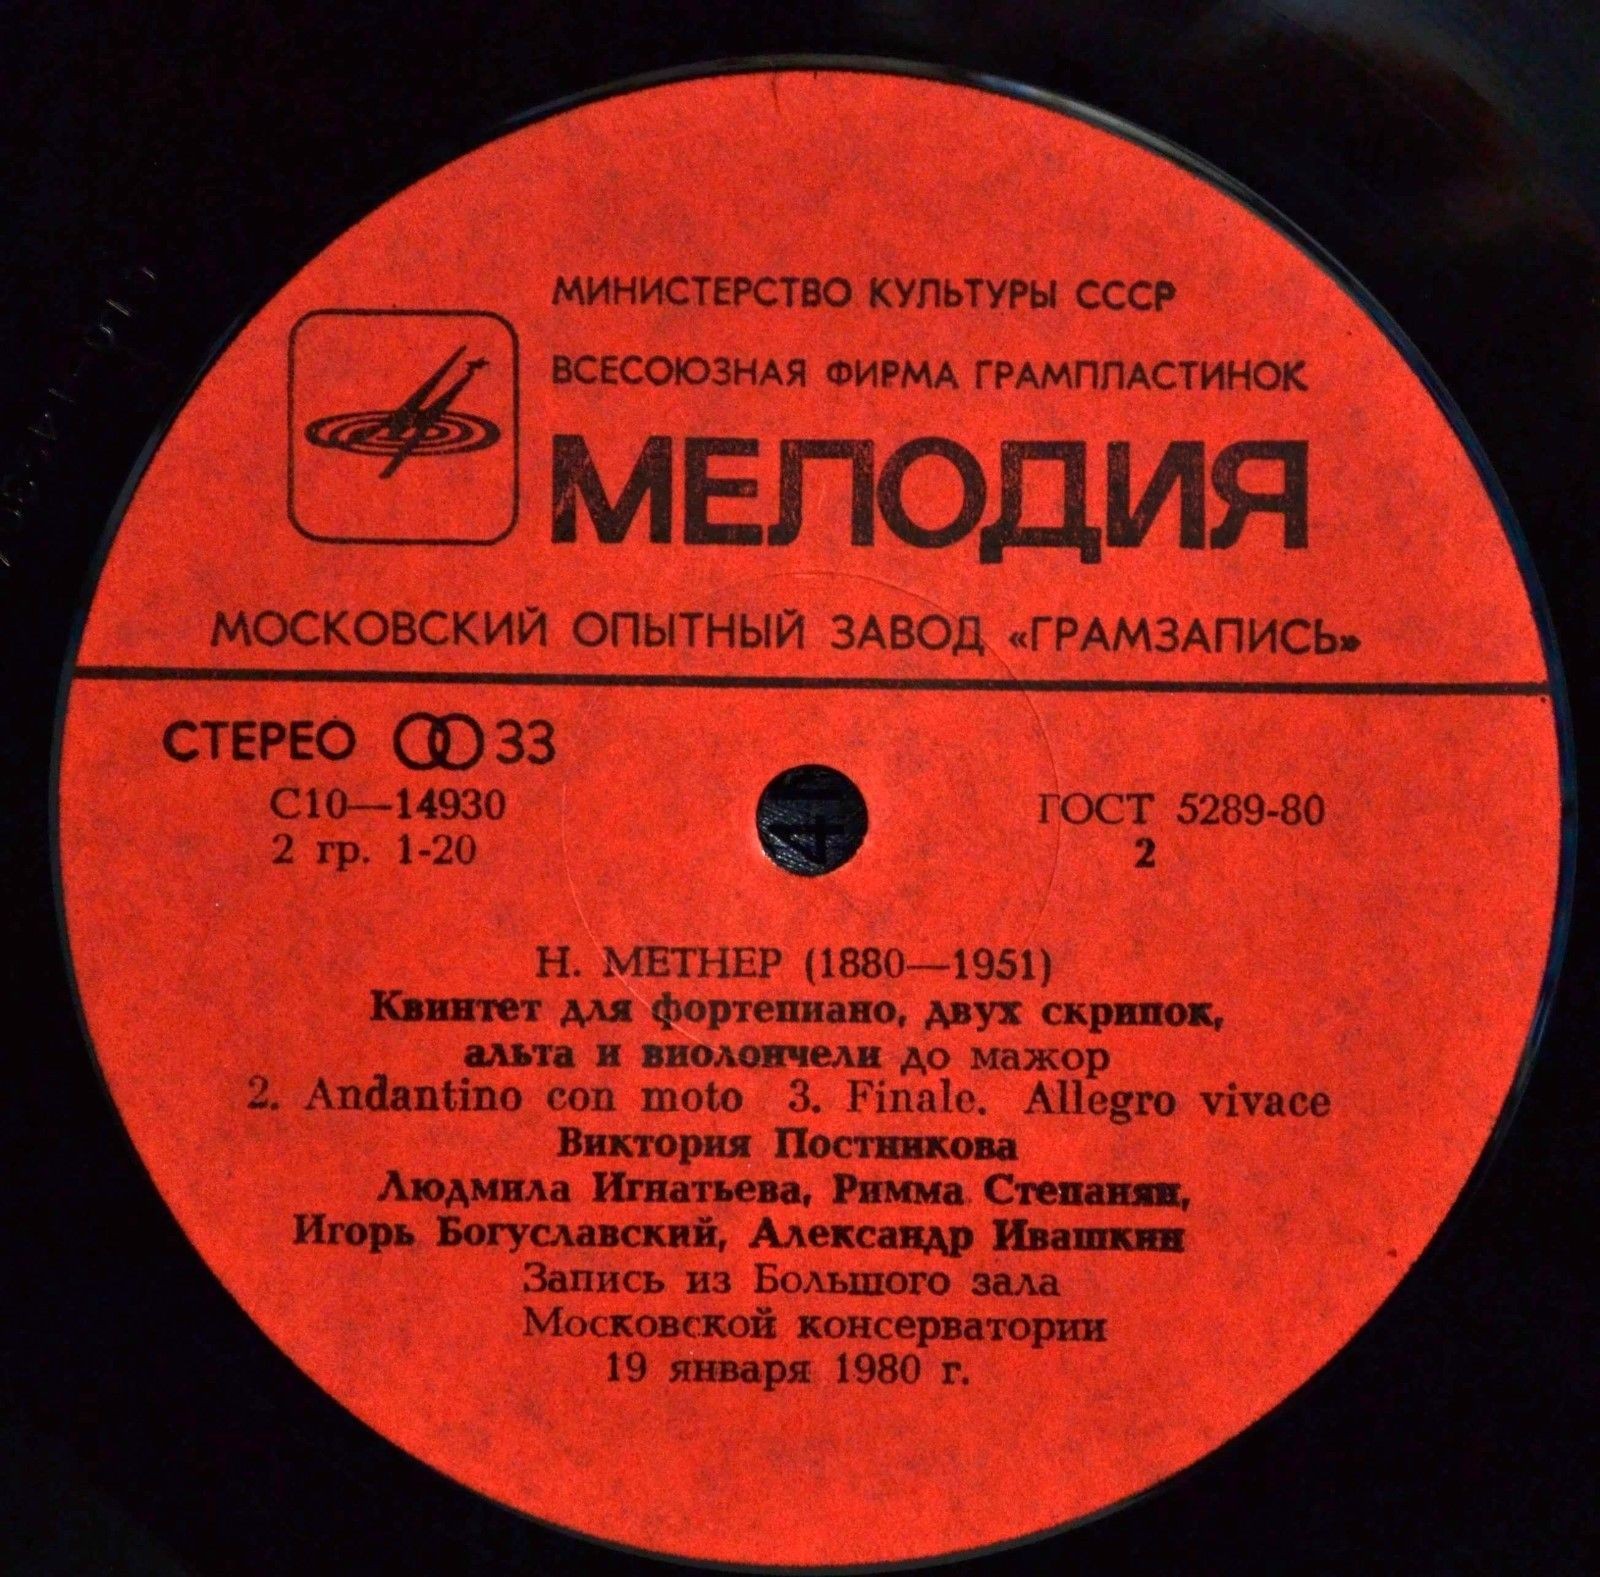 Н. МЕТНЕР (1880-1951): Соната-воспоминание, Фортепианный квинтет